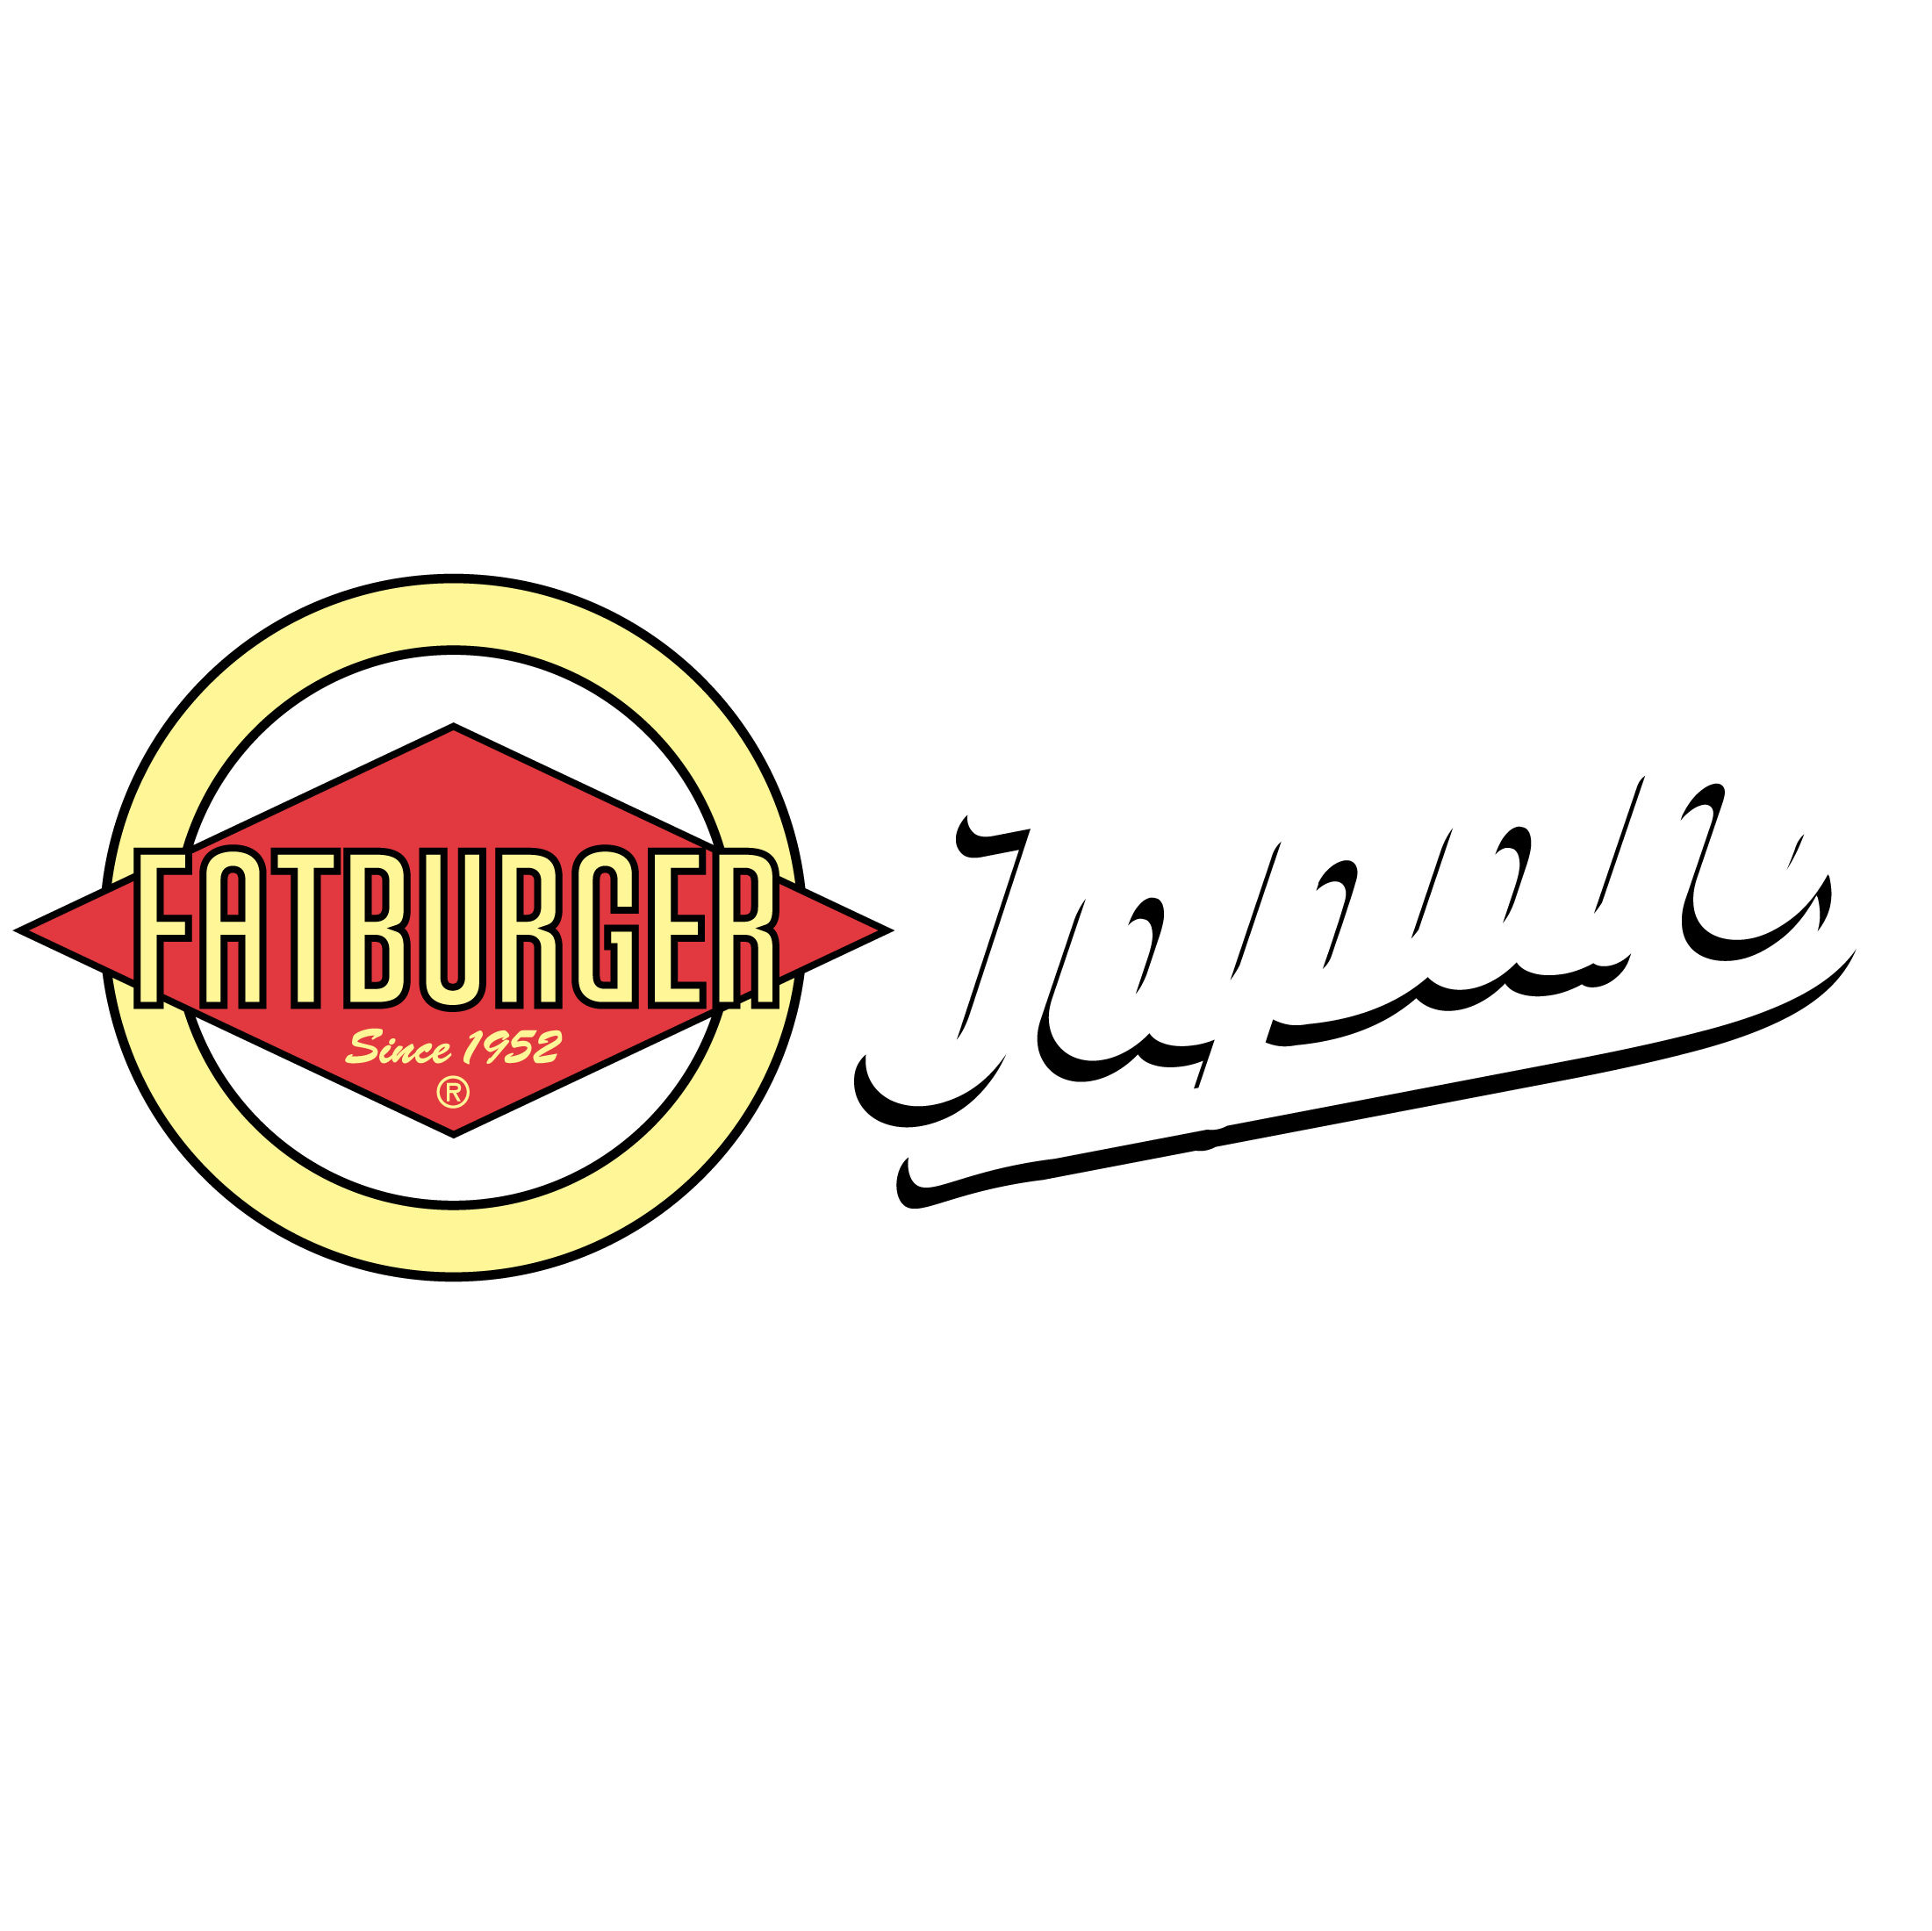 Fatburger Japan